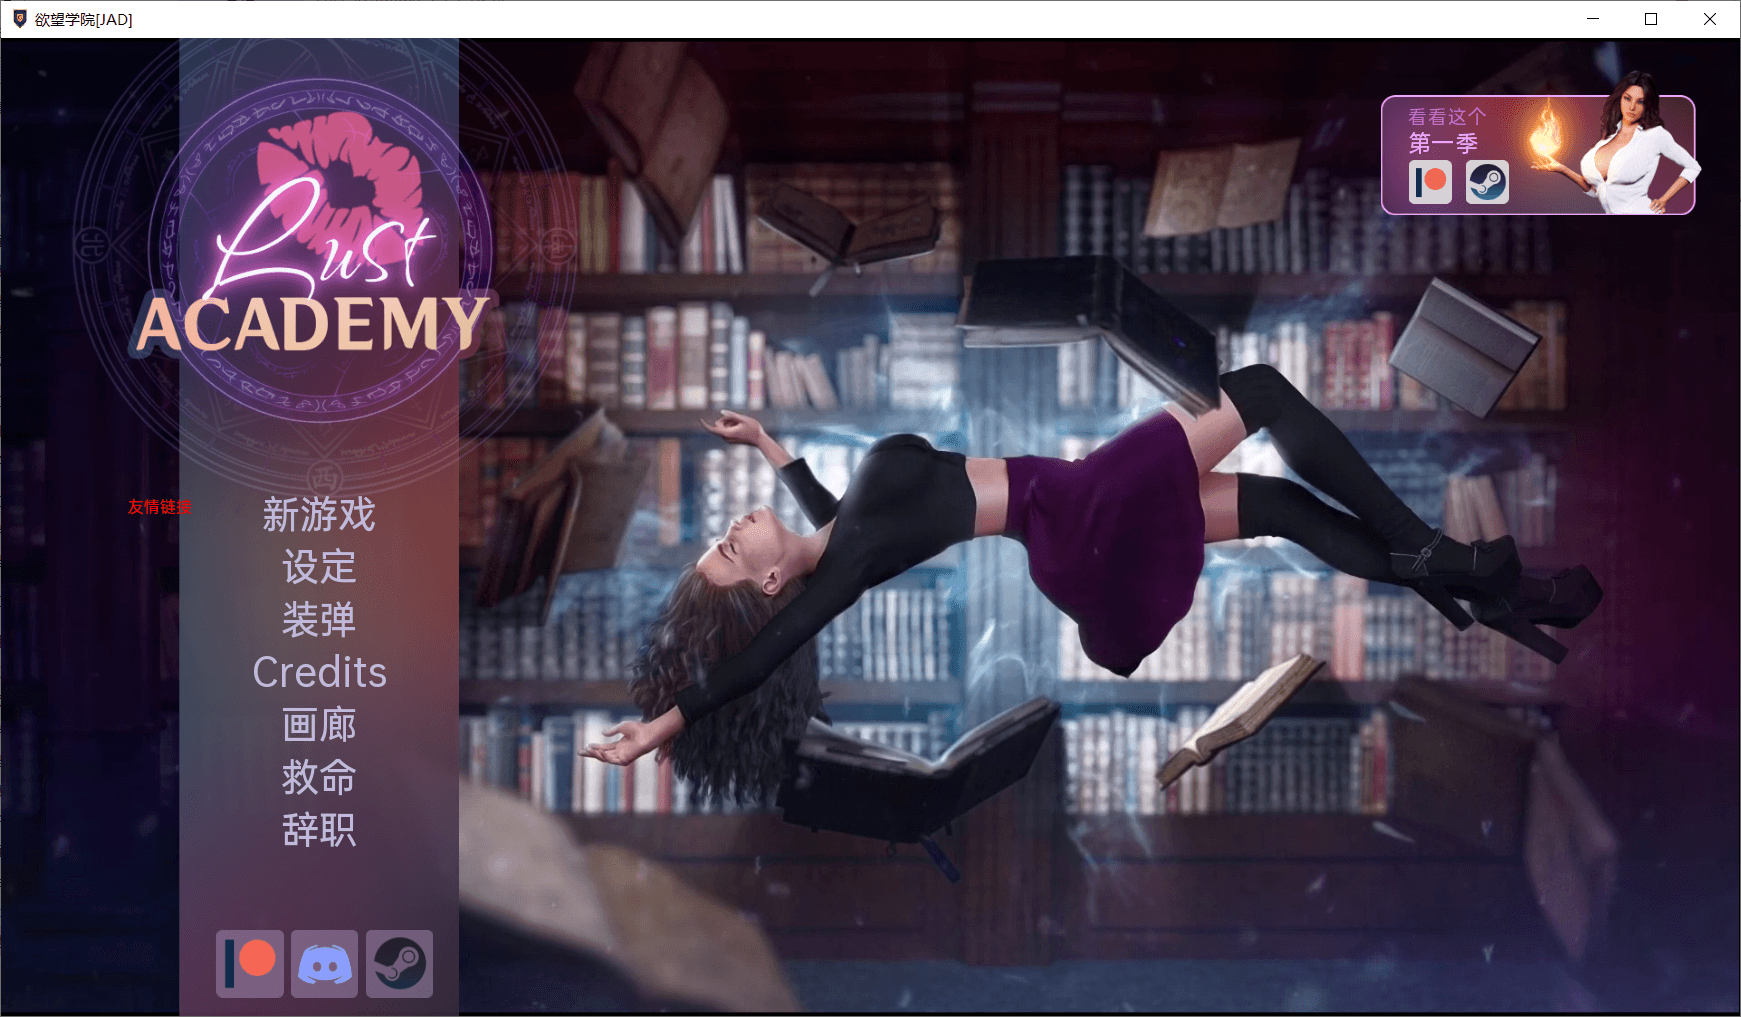 【欧美SLG/官中/动态】欲望学院 Lust Academy 第二季V1.7.1d 汉化版【PC+安卓/2.8G/更新】-小皮ACG-二次元资源分享